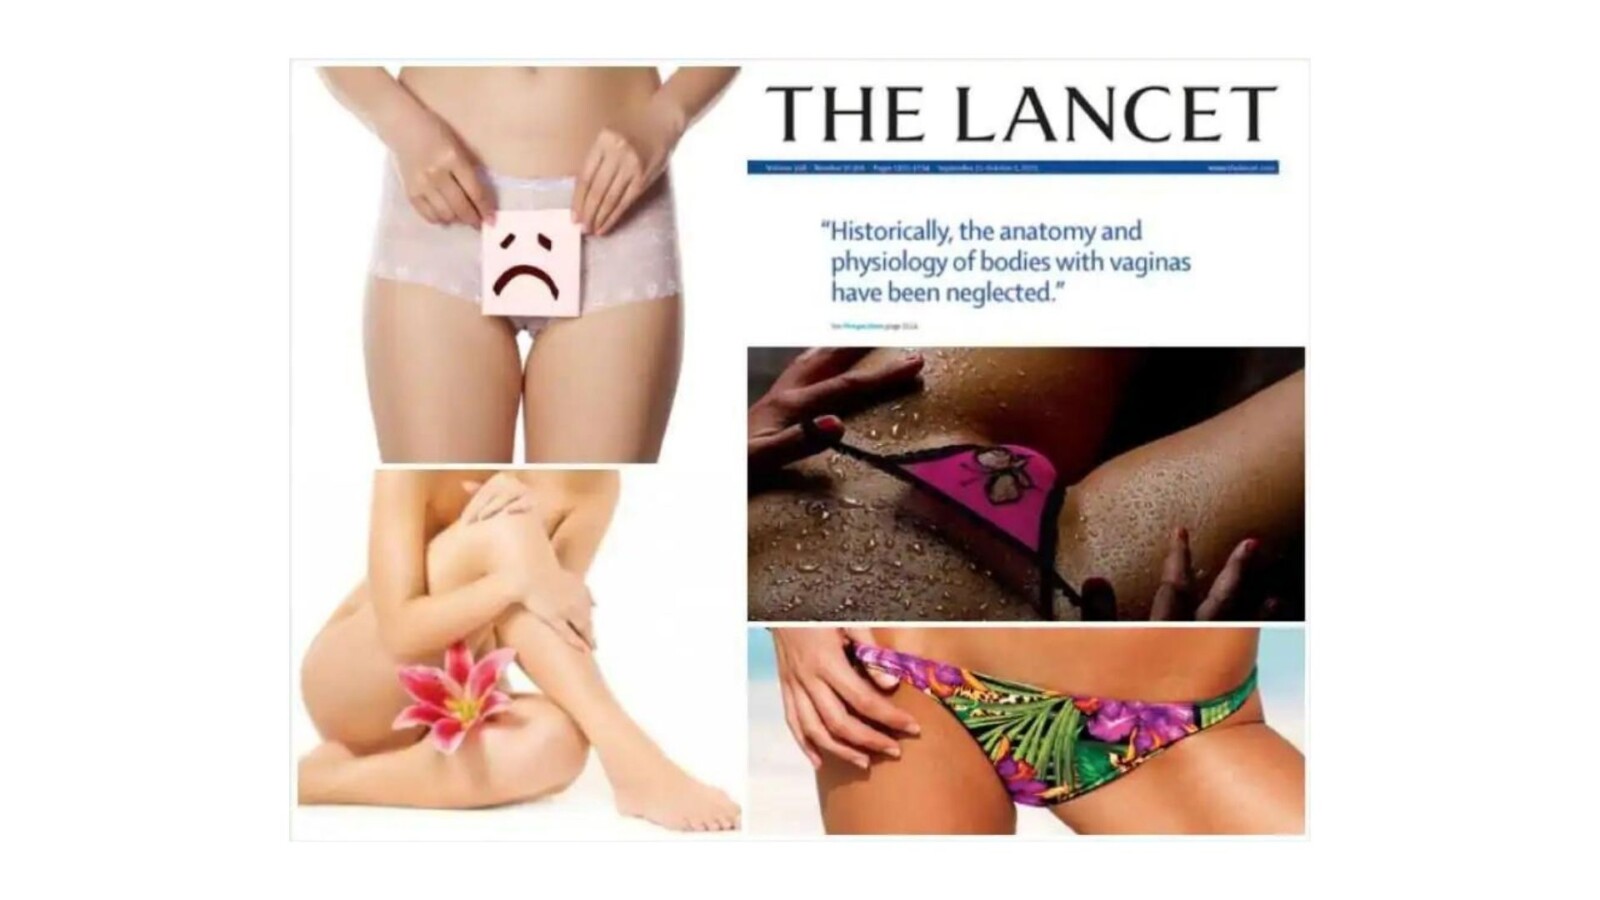 the lancet